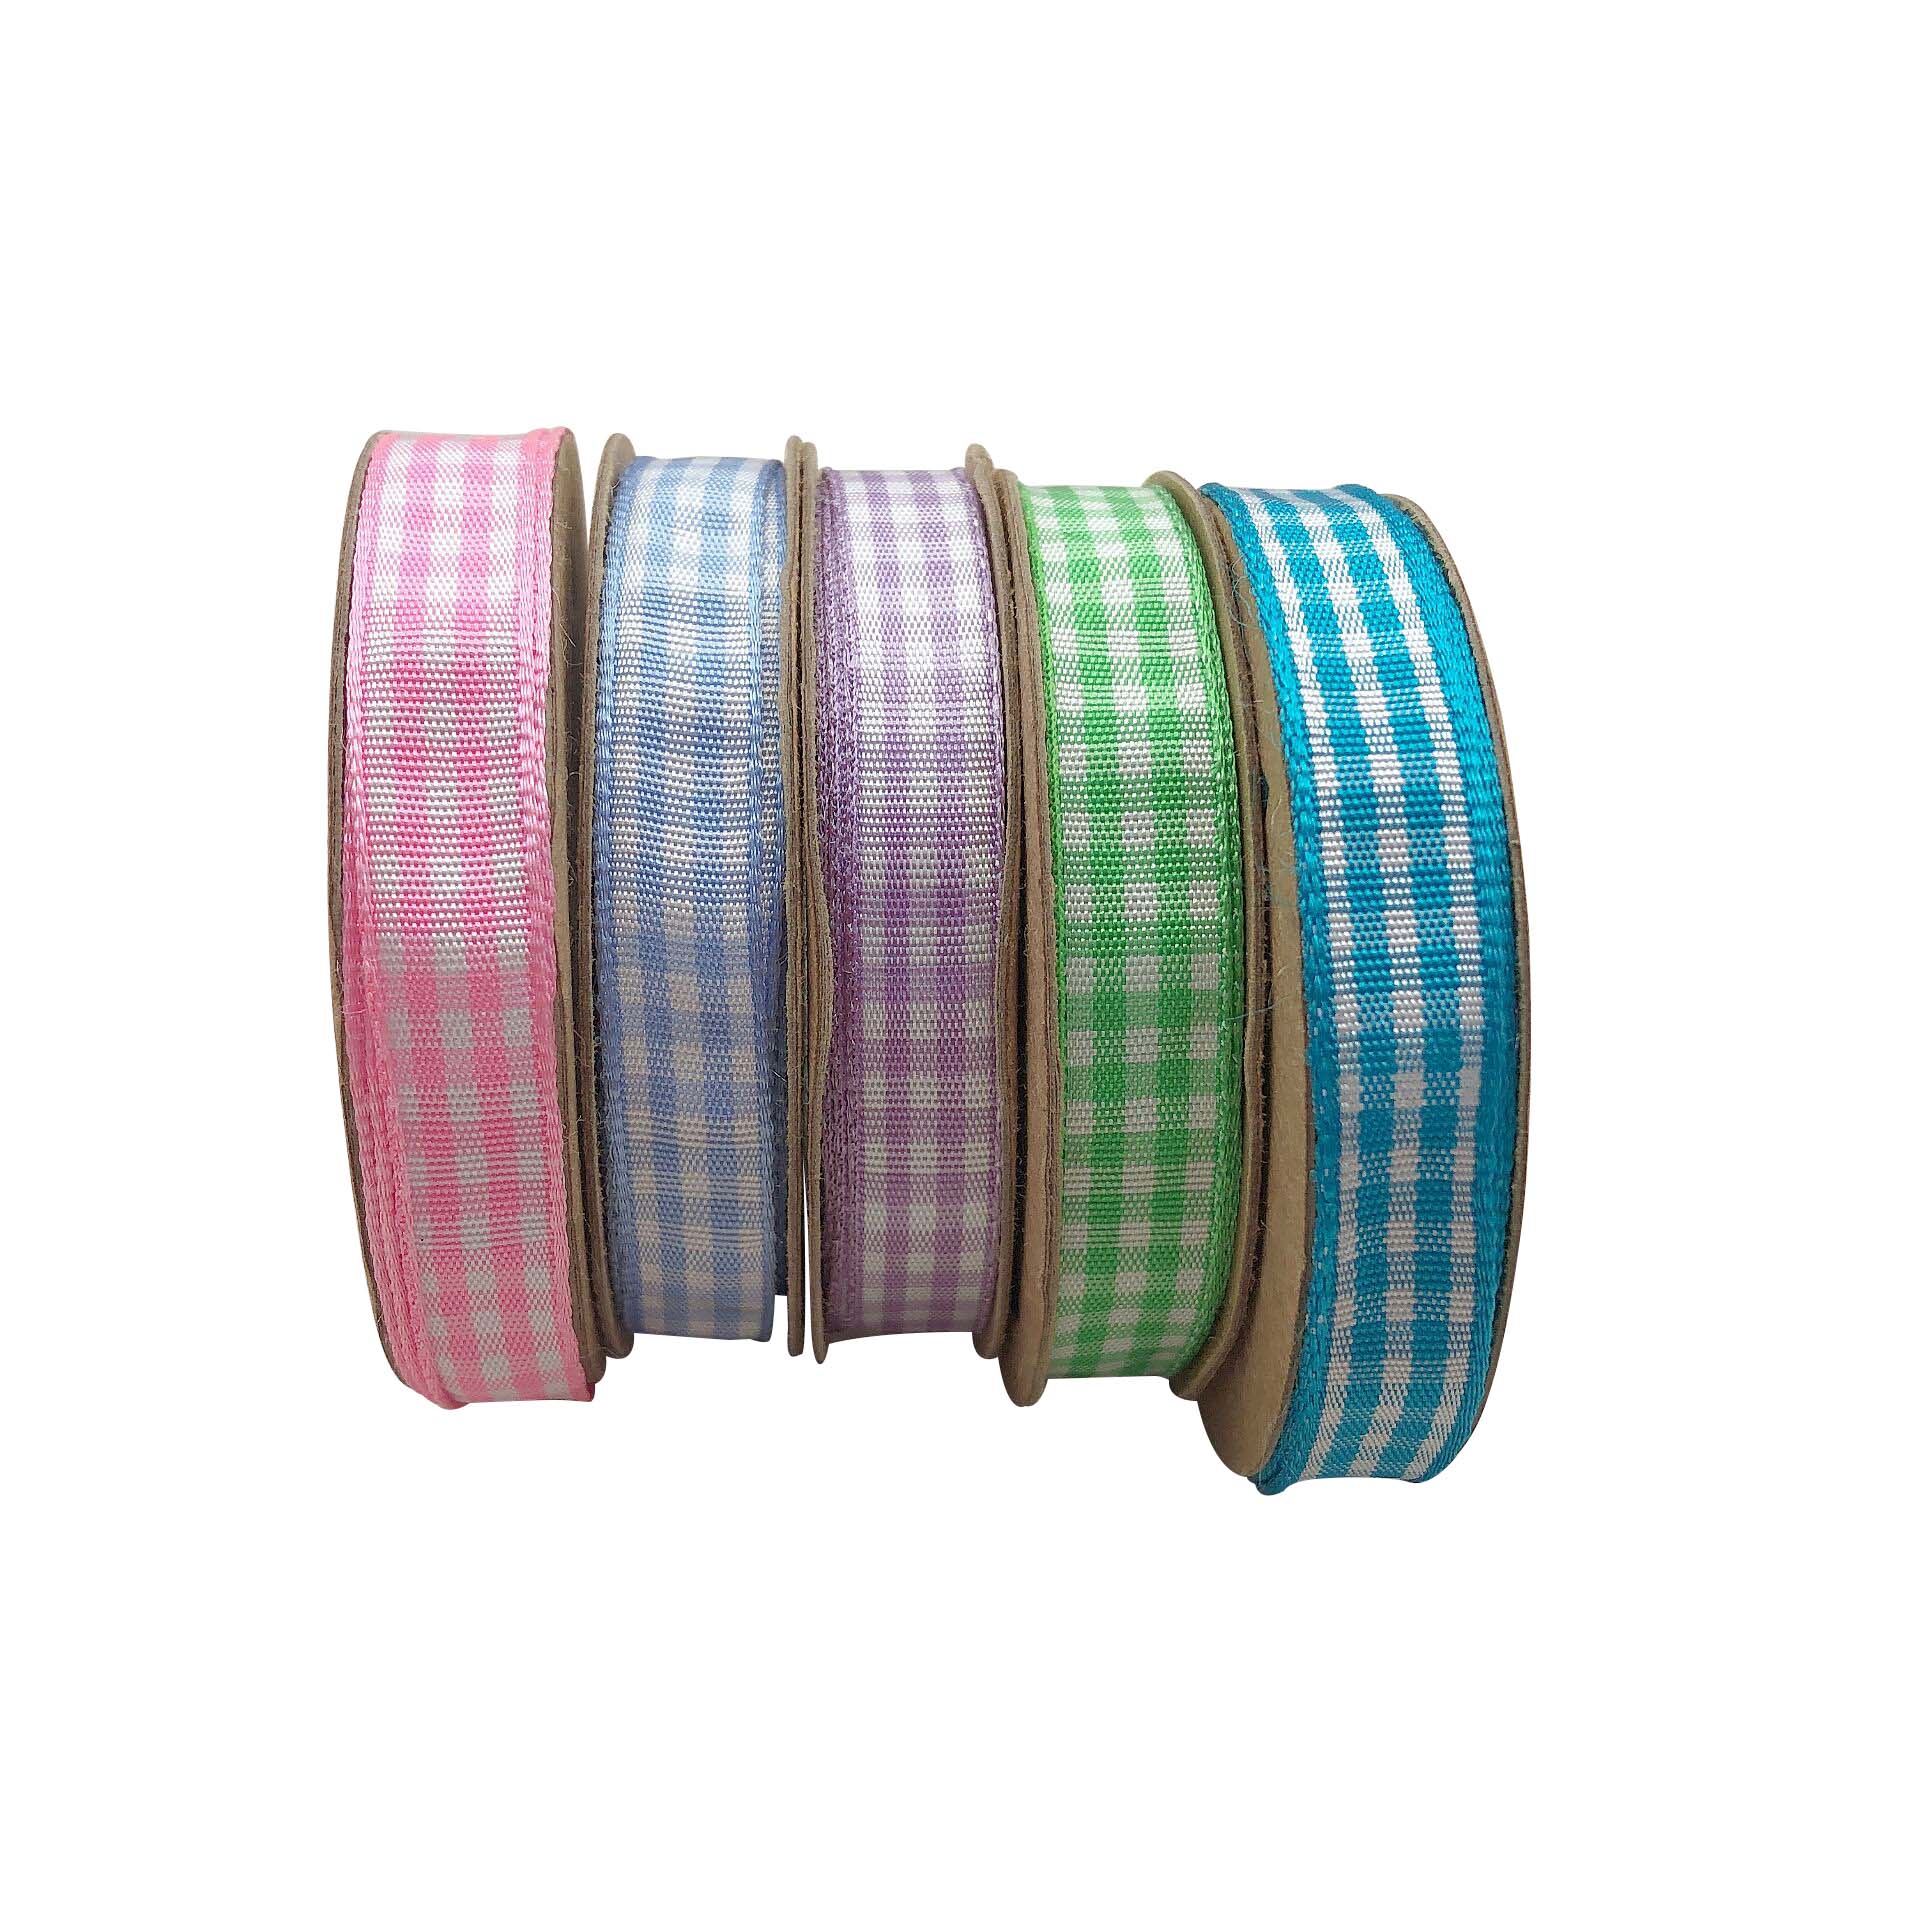 5/8”16mm fashion colorful tartan plaid gingham ribbon